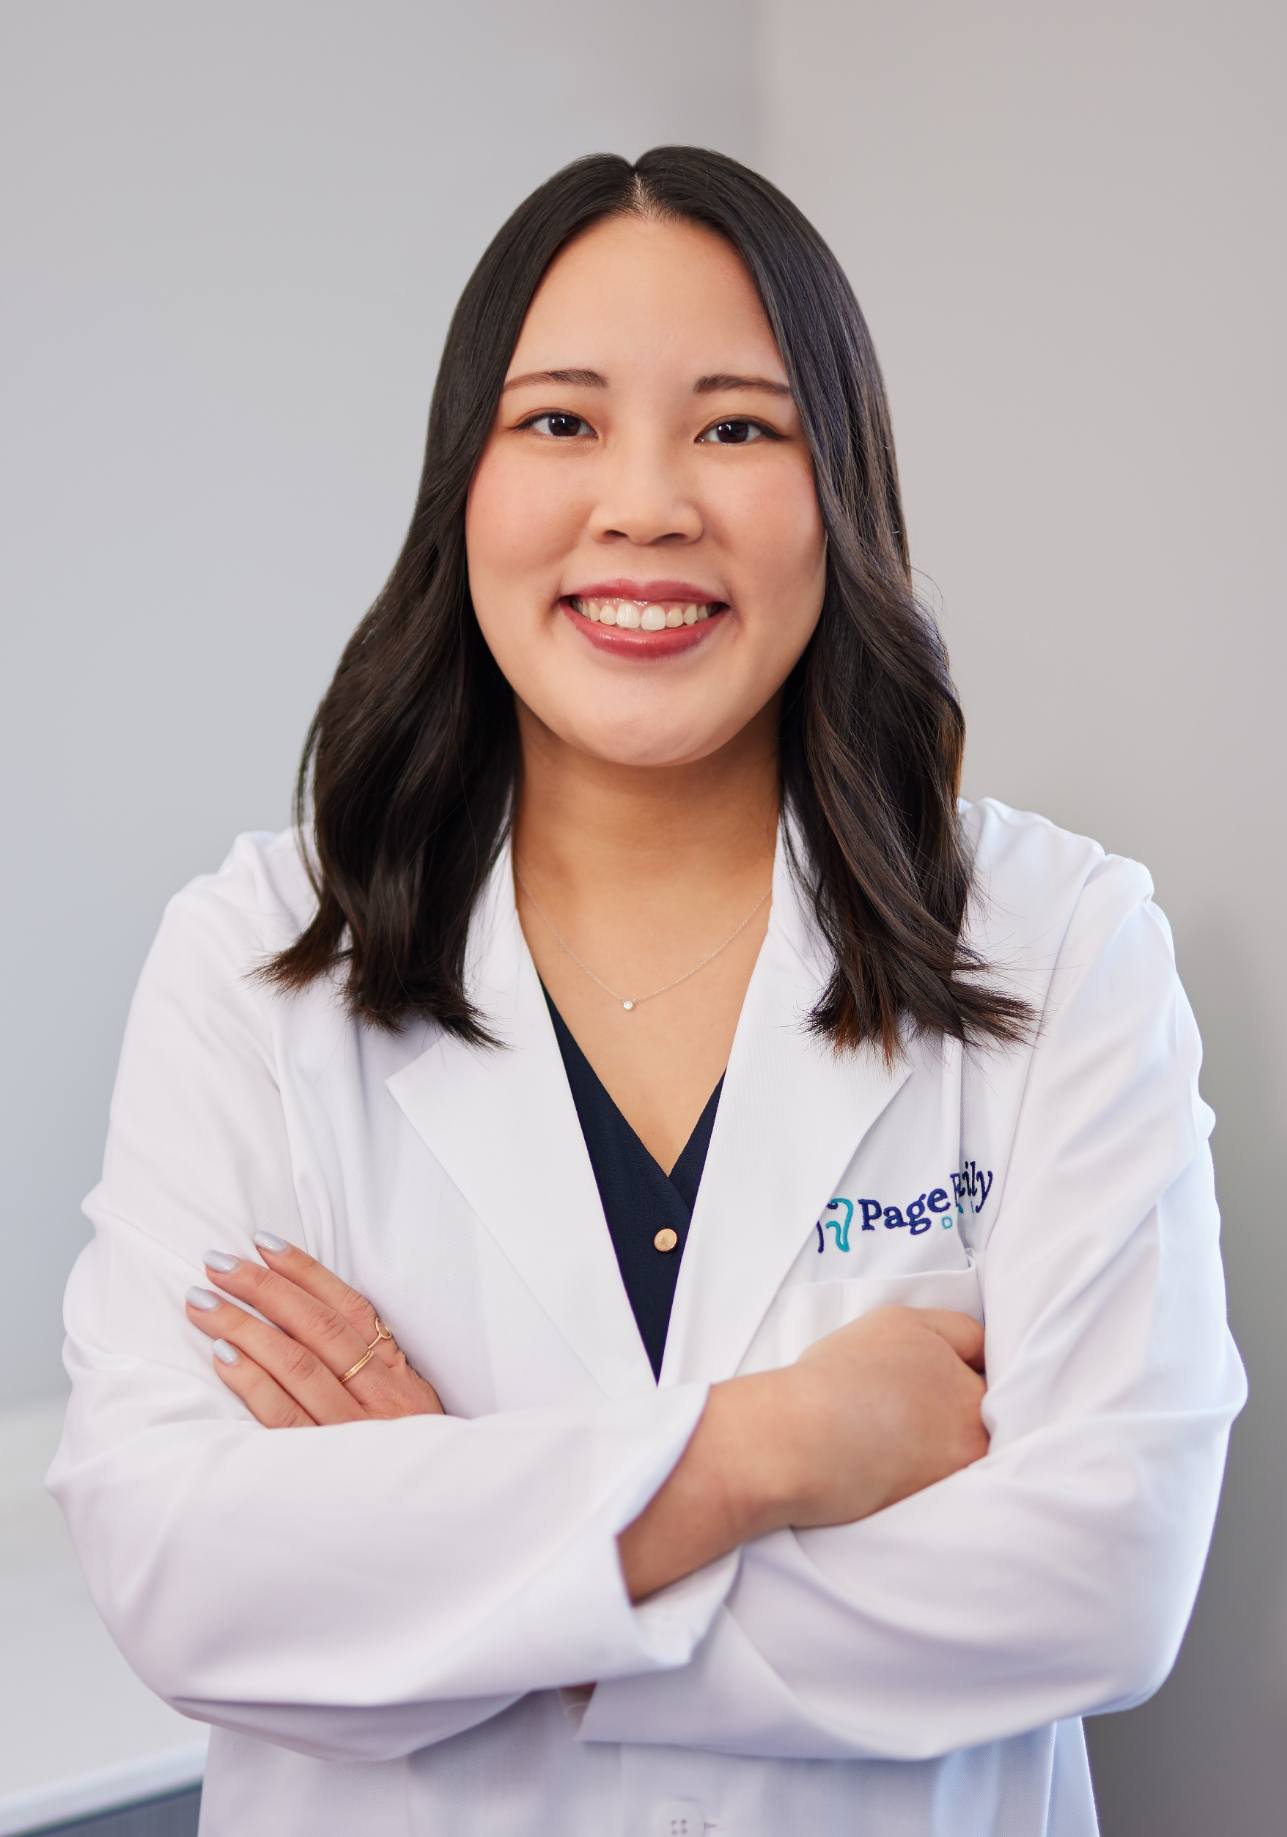 Revere Massachusetts dentist Doctor Melanie Ma